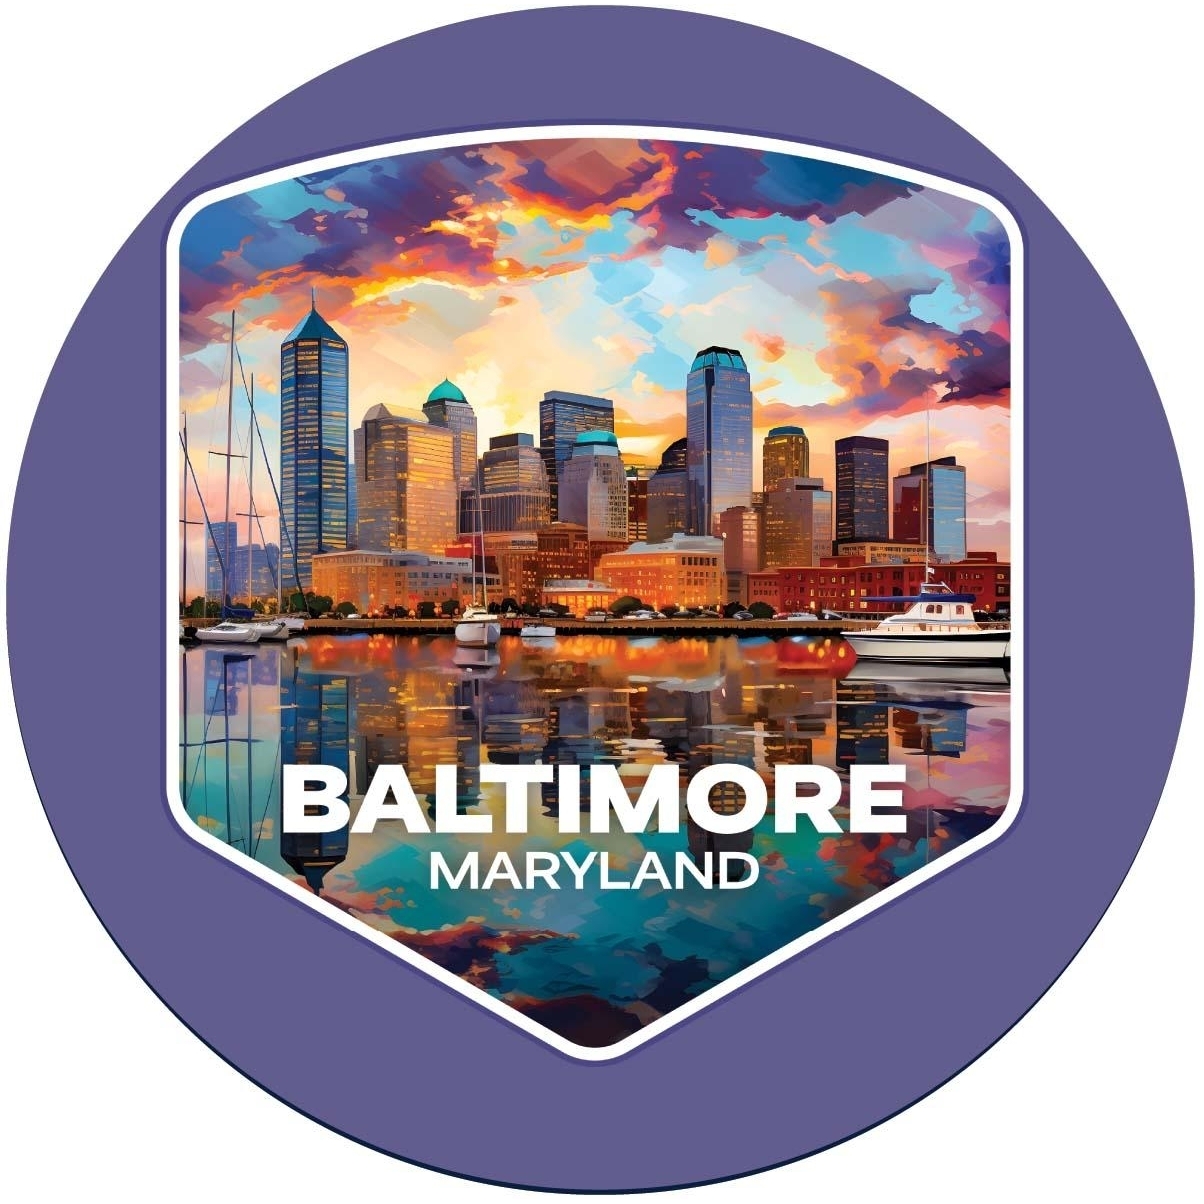 Baltimore Maryland A Souvenir Round Vinyl Decal Sticker - 4-Inch